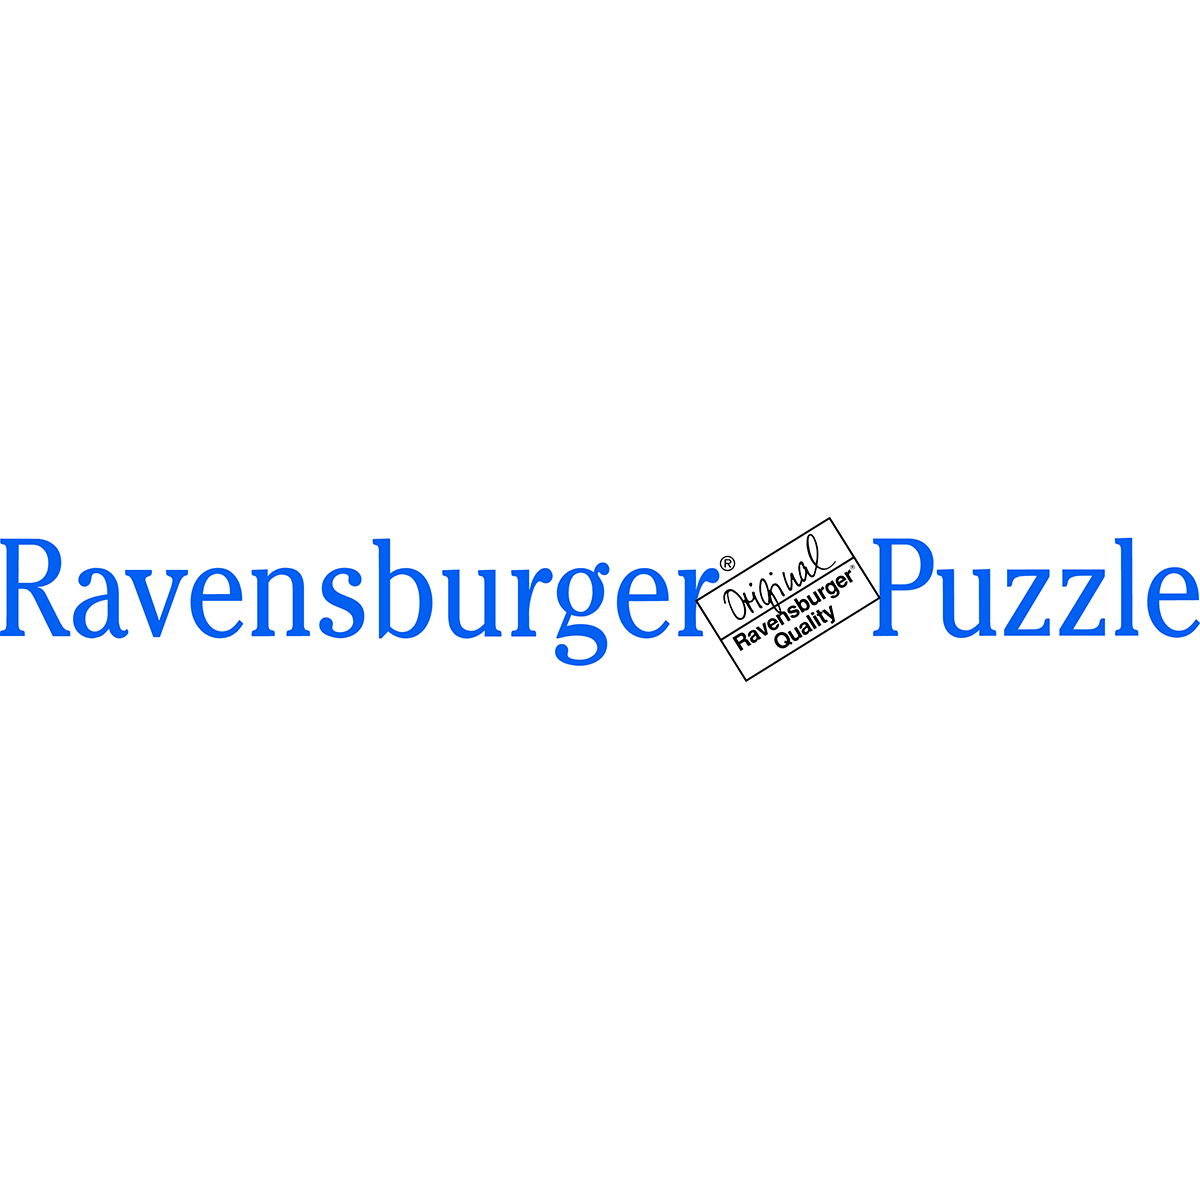 Ravensburger - puzzle 125 pezzi - formato giant – per bambini a partire dai 6 anni - disney princess – 09789 - DISNEY PRINCESS, RAVENSBURGER